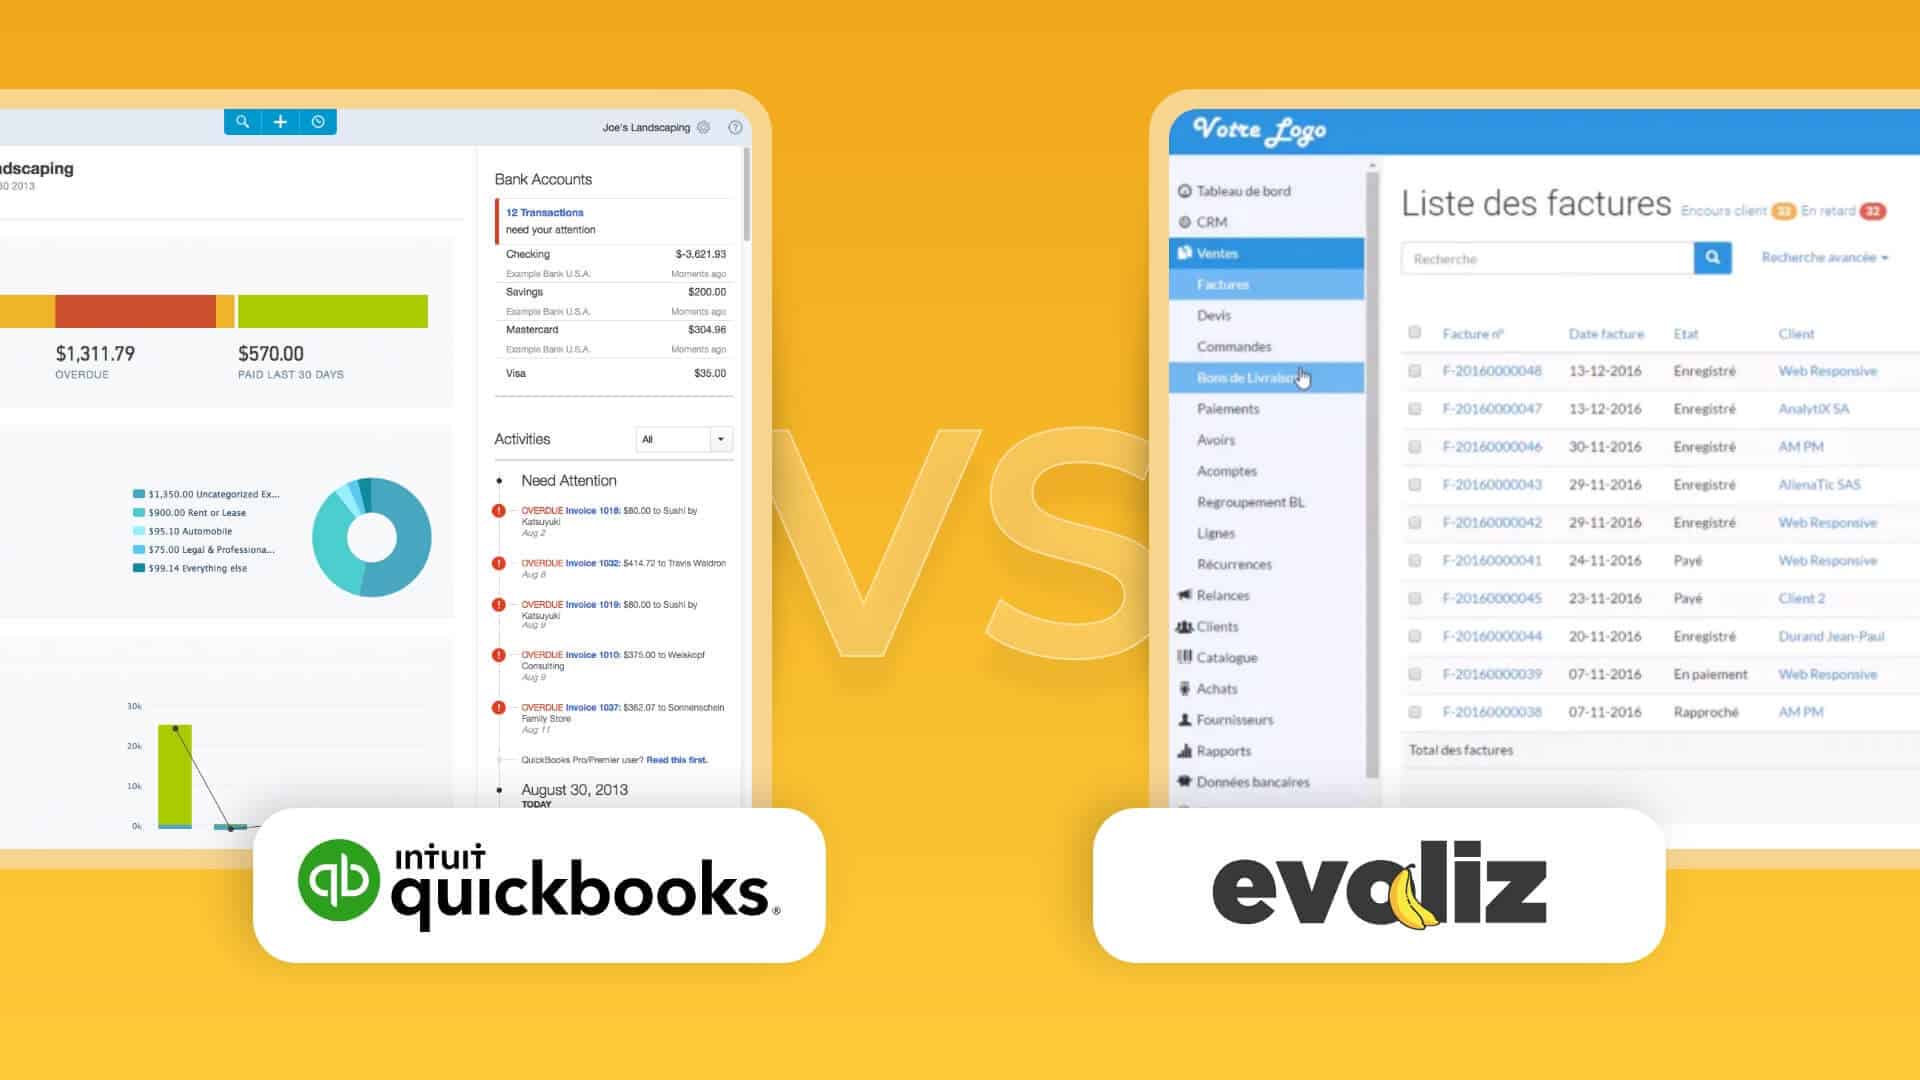 alternatives à quickbooks : quickbooks vs evoliz